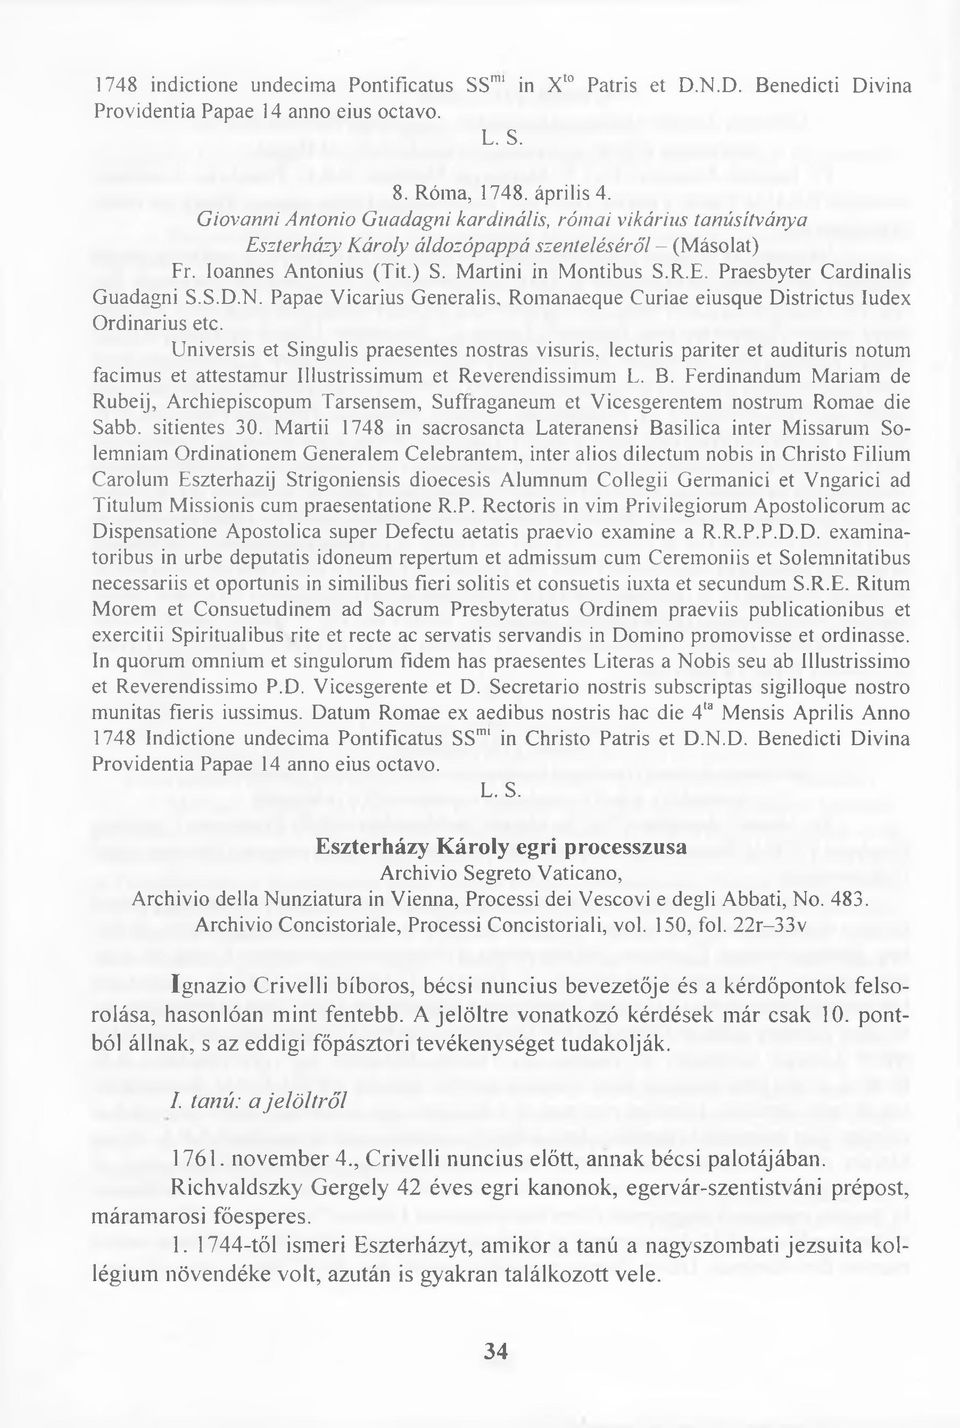 S.D.N. Papae Vicarius Generalis, Romanaeque Curiae eiusque Districtus Iudex Ordinarius etc.